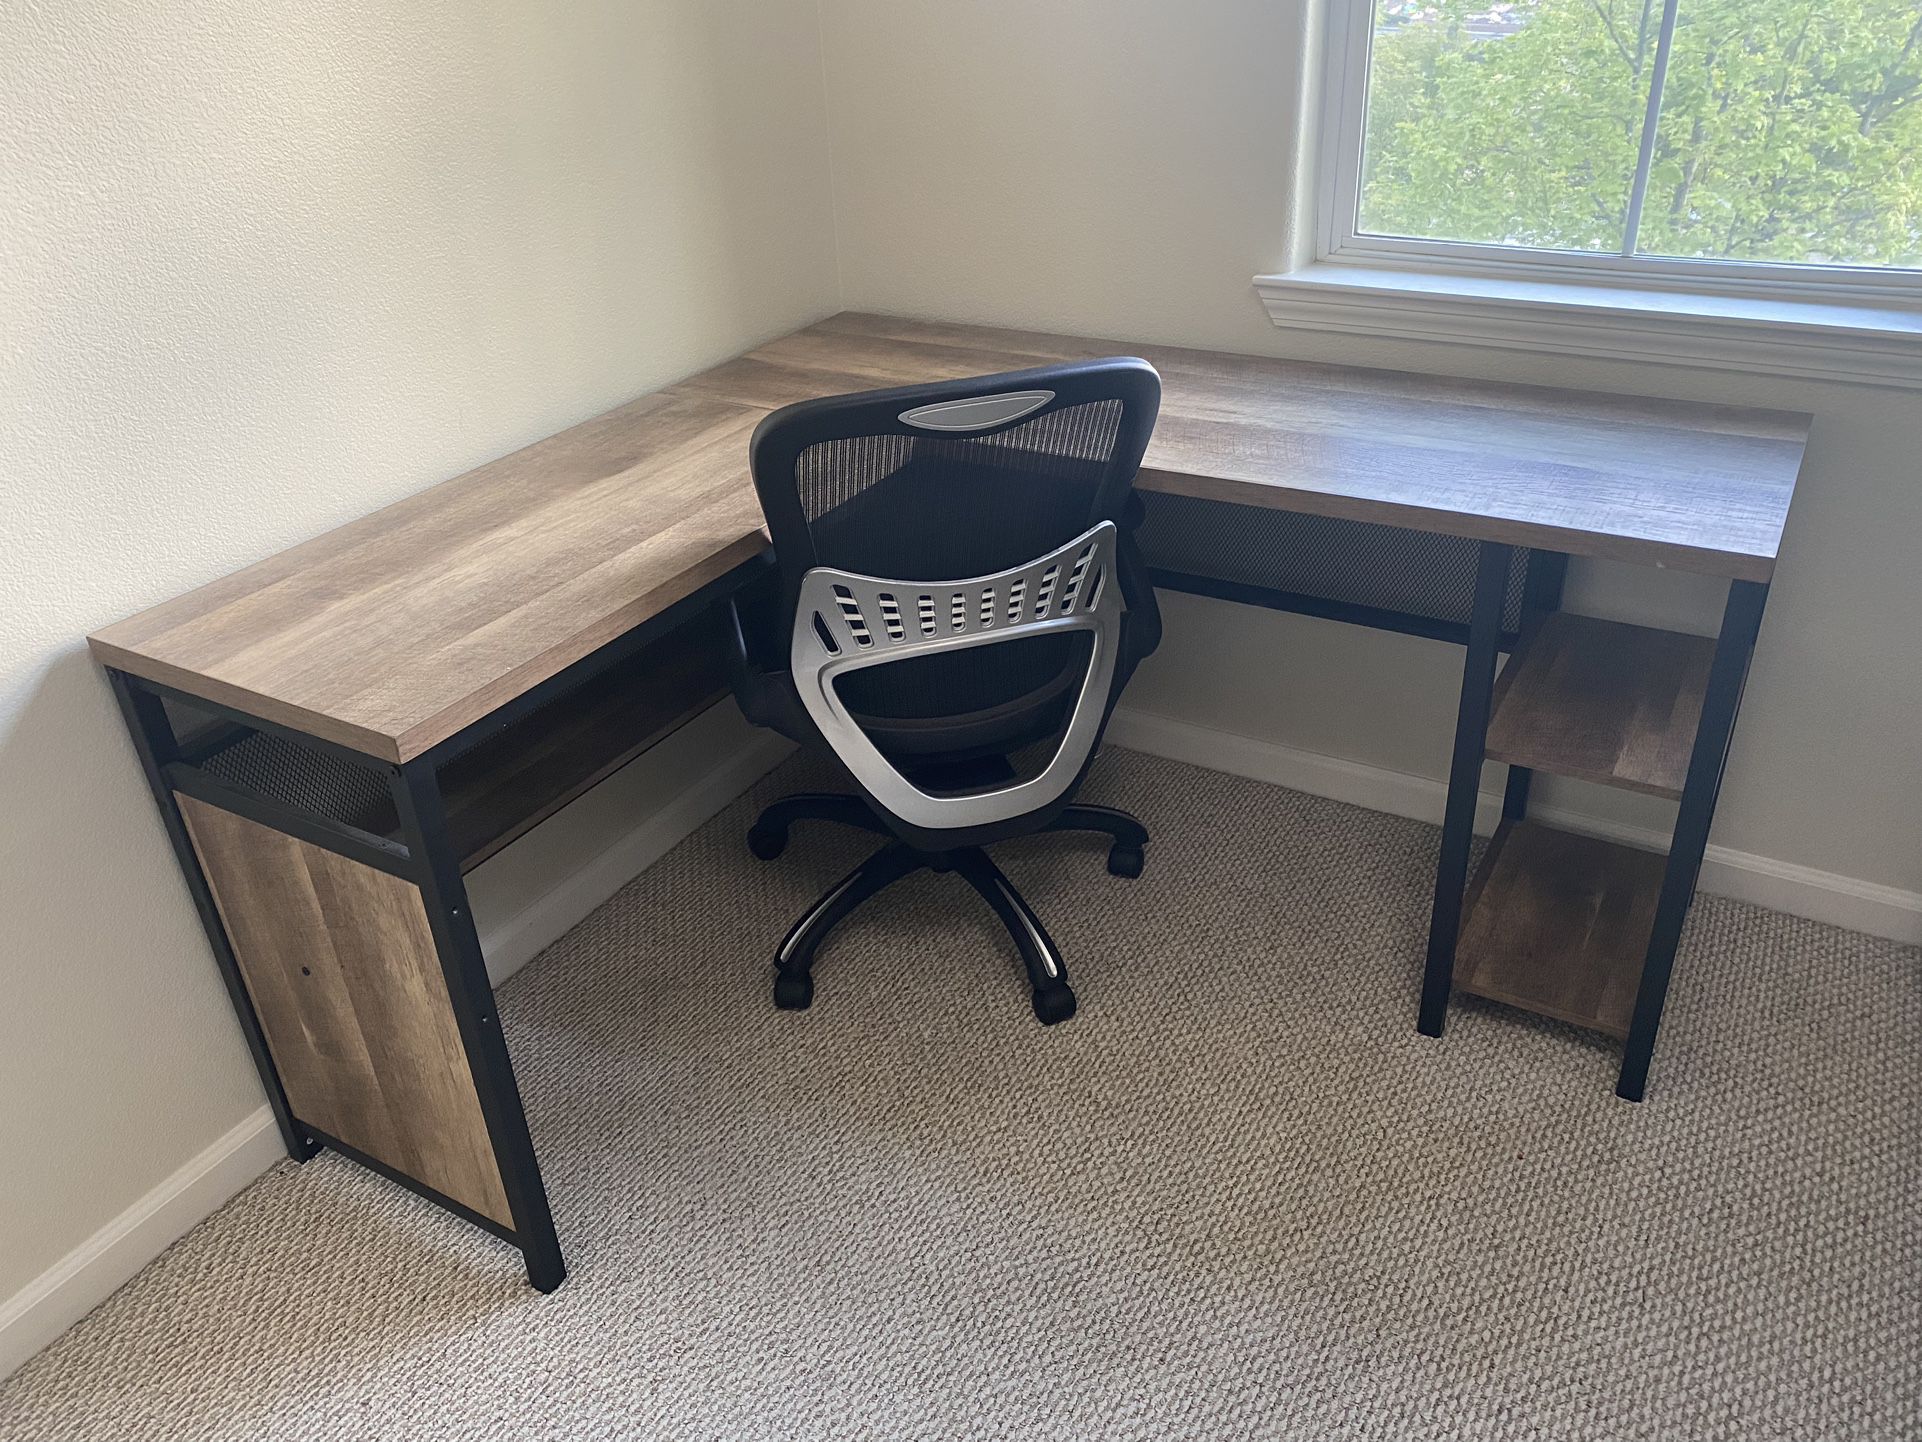 L Shaped wooden Desk